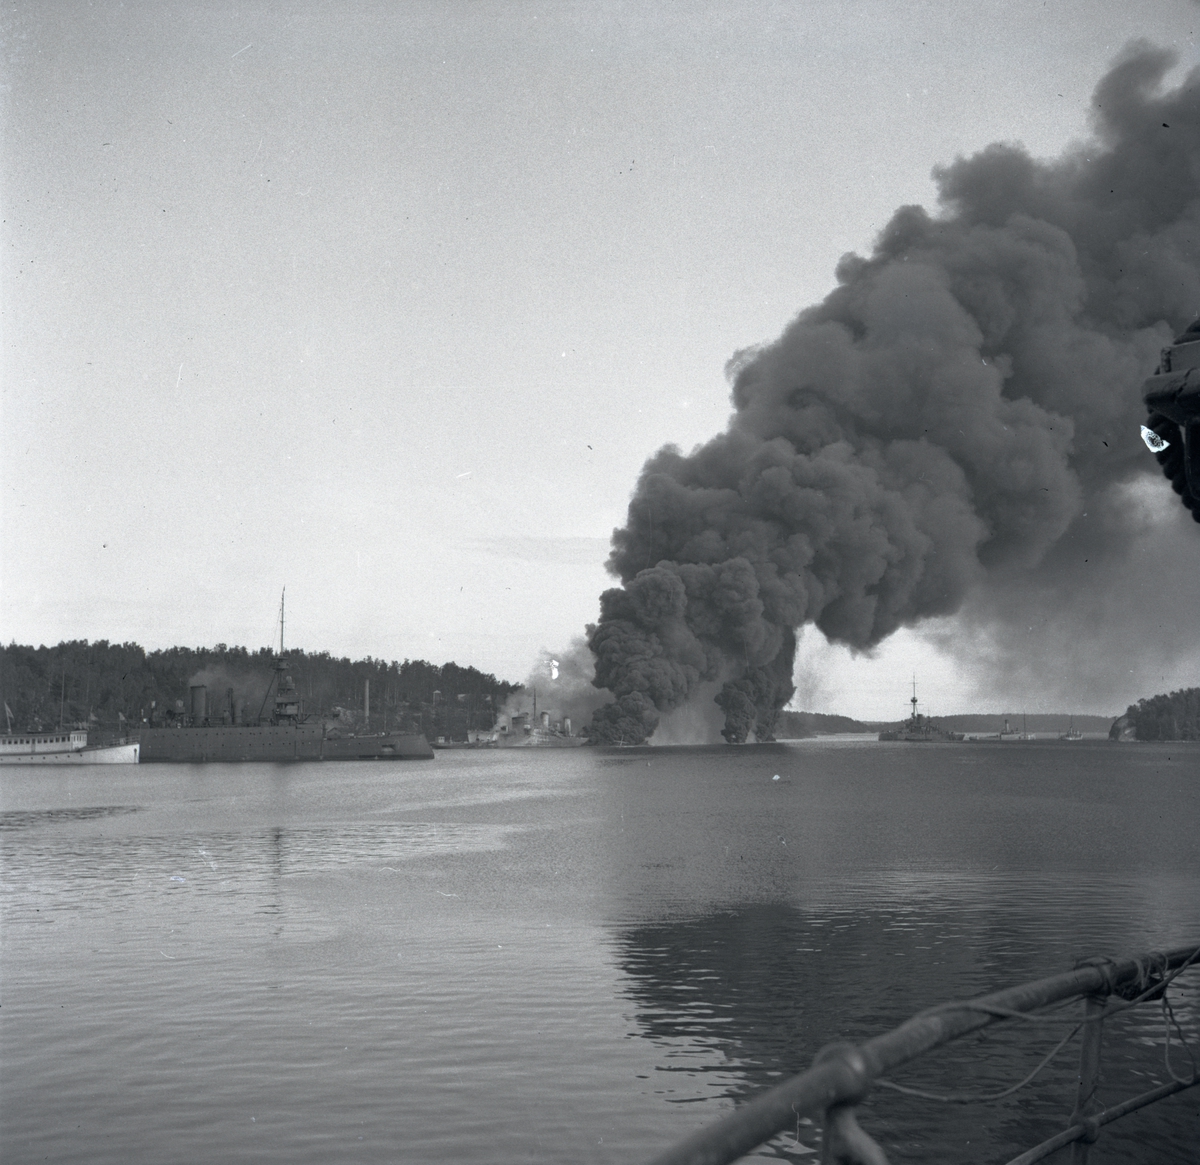 De tre jagarna Klas Horn, Klas Uggla och Göteborg brinna efter explosion ombord den 17 sept 1941 på Hårsfjärden.
33 man dödades och 17 skadades vid tillfället.